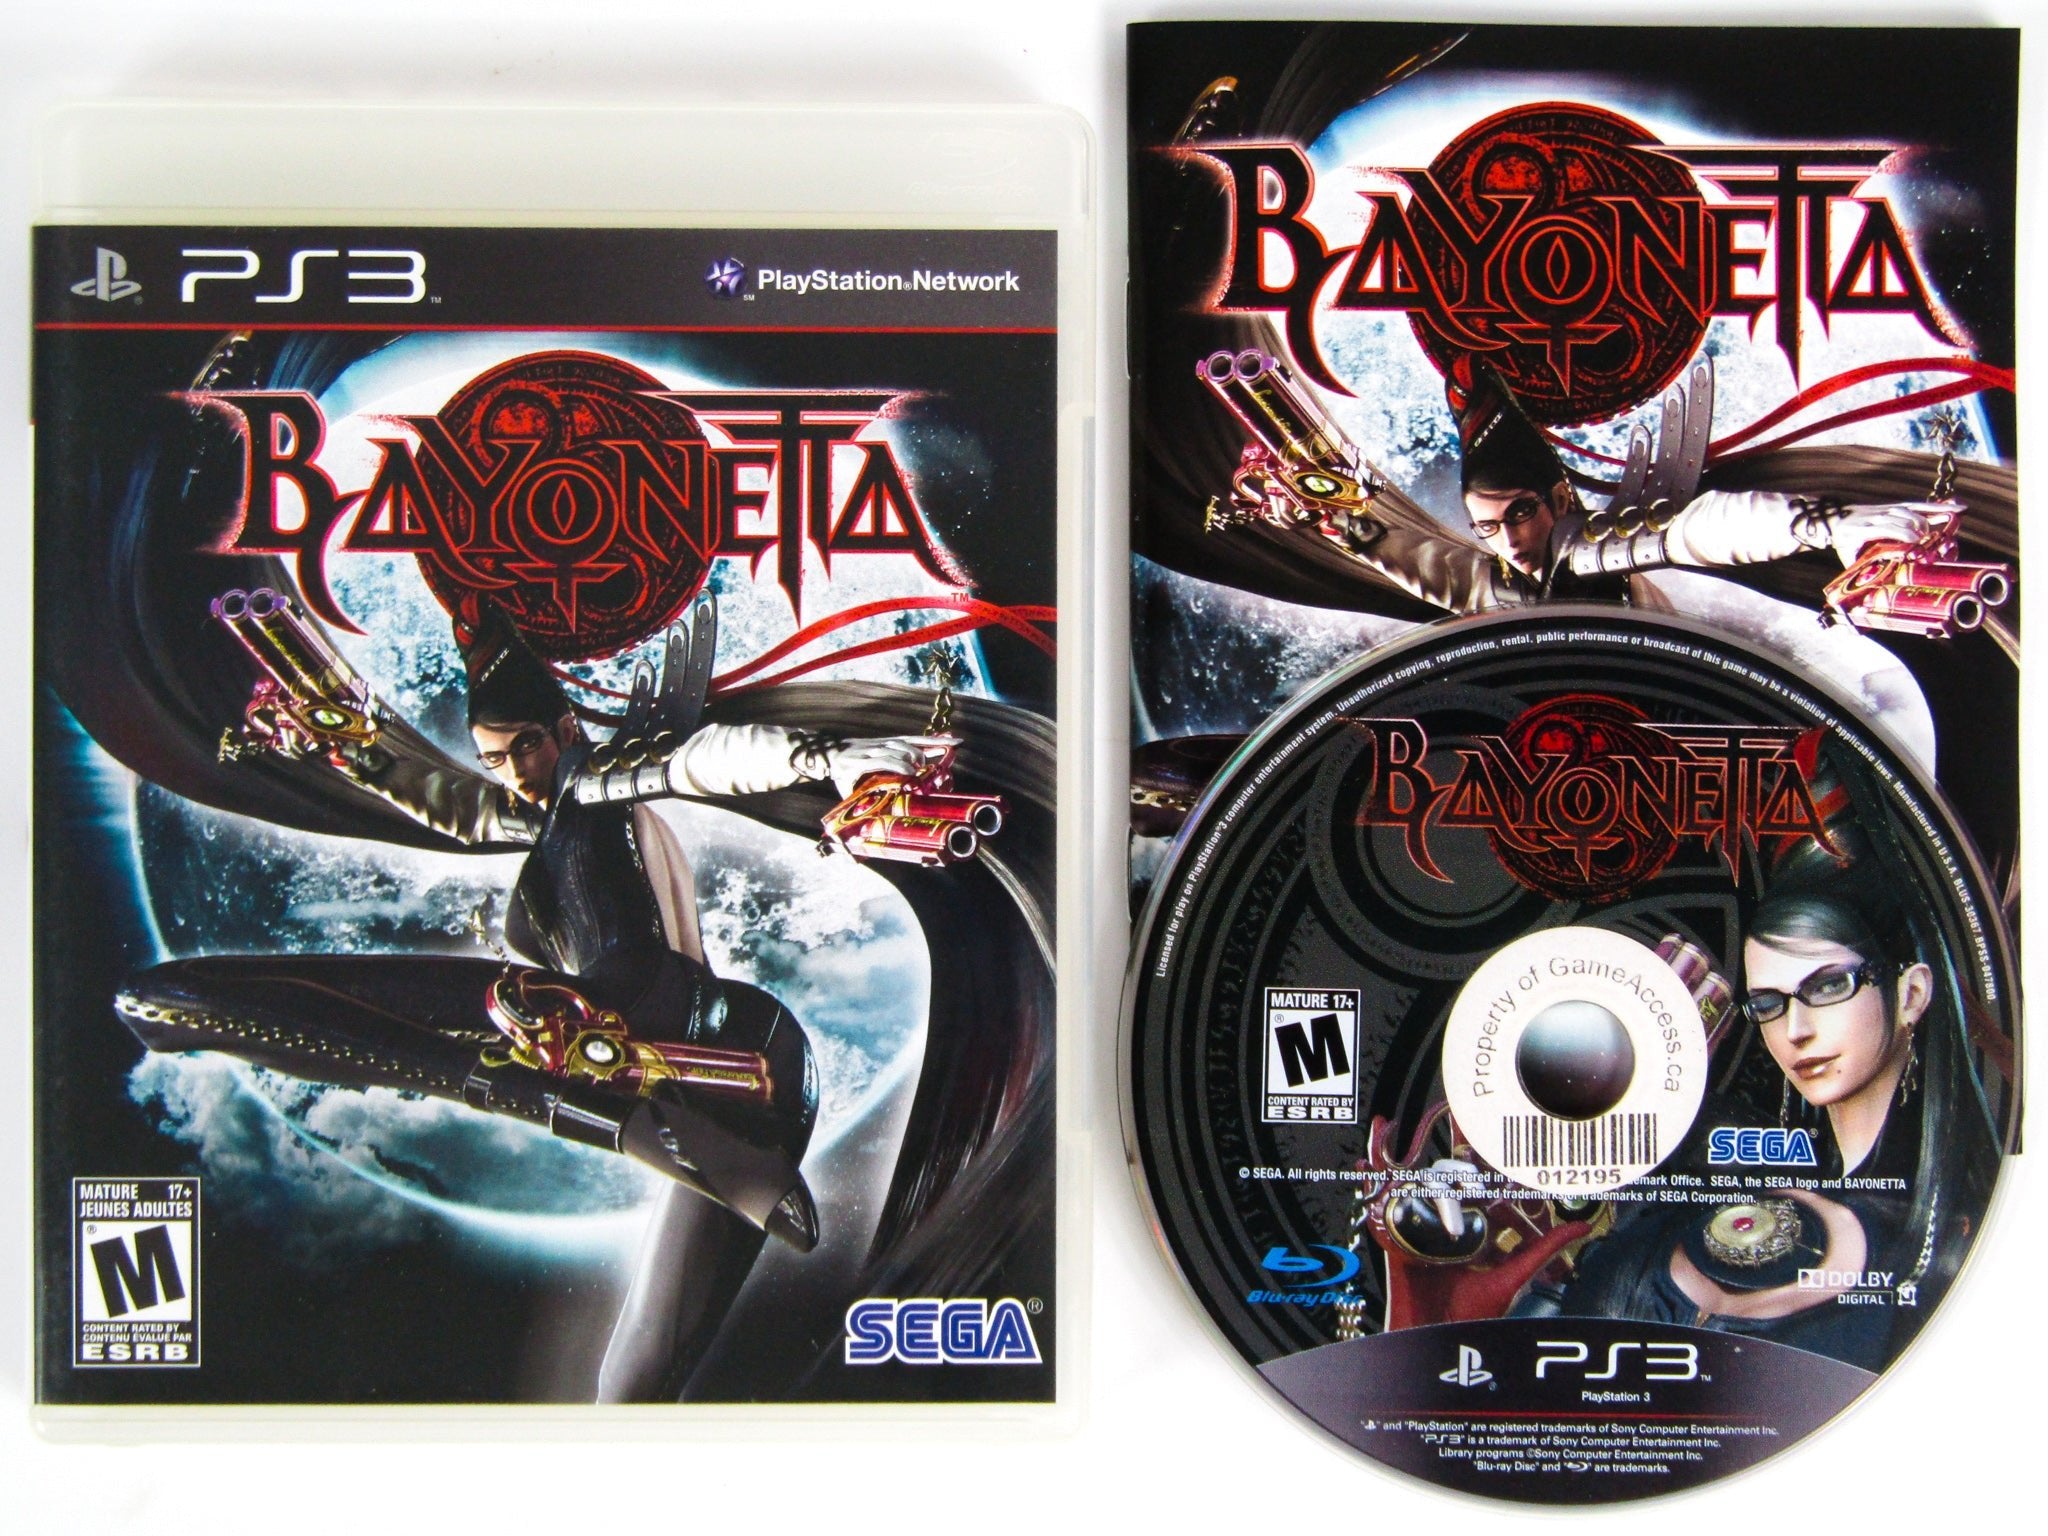 Bayonetta Playstation 3 PS3 Used